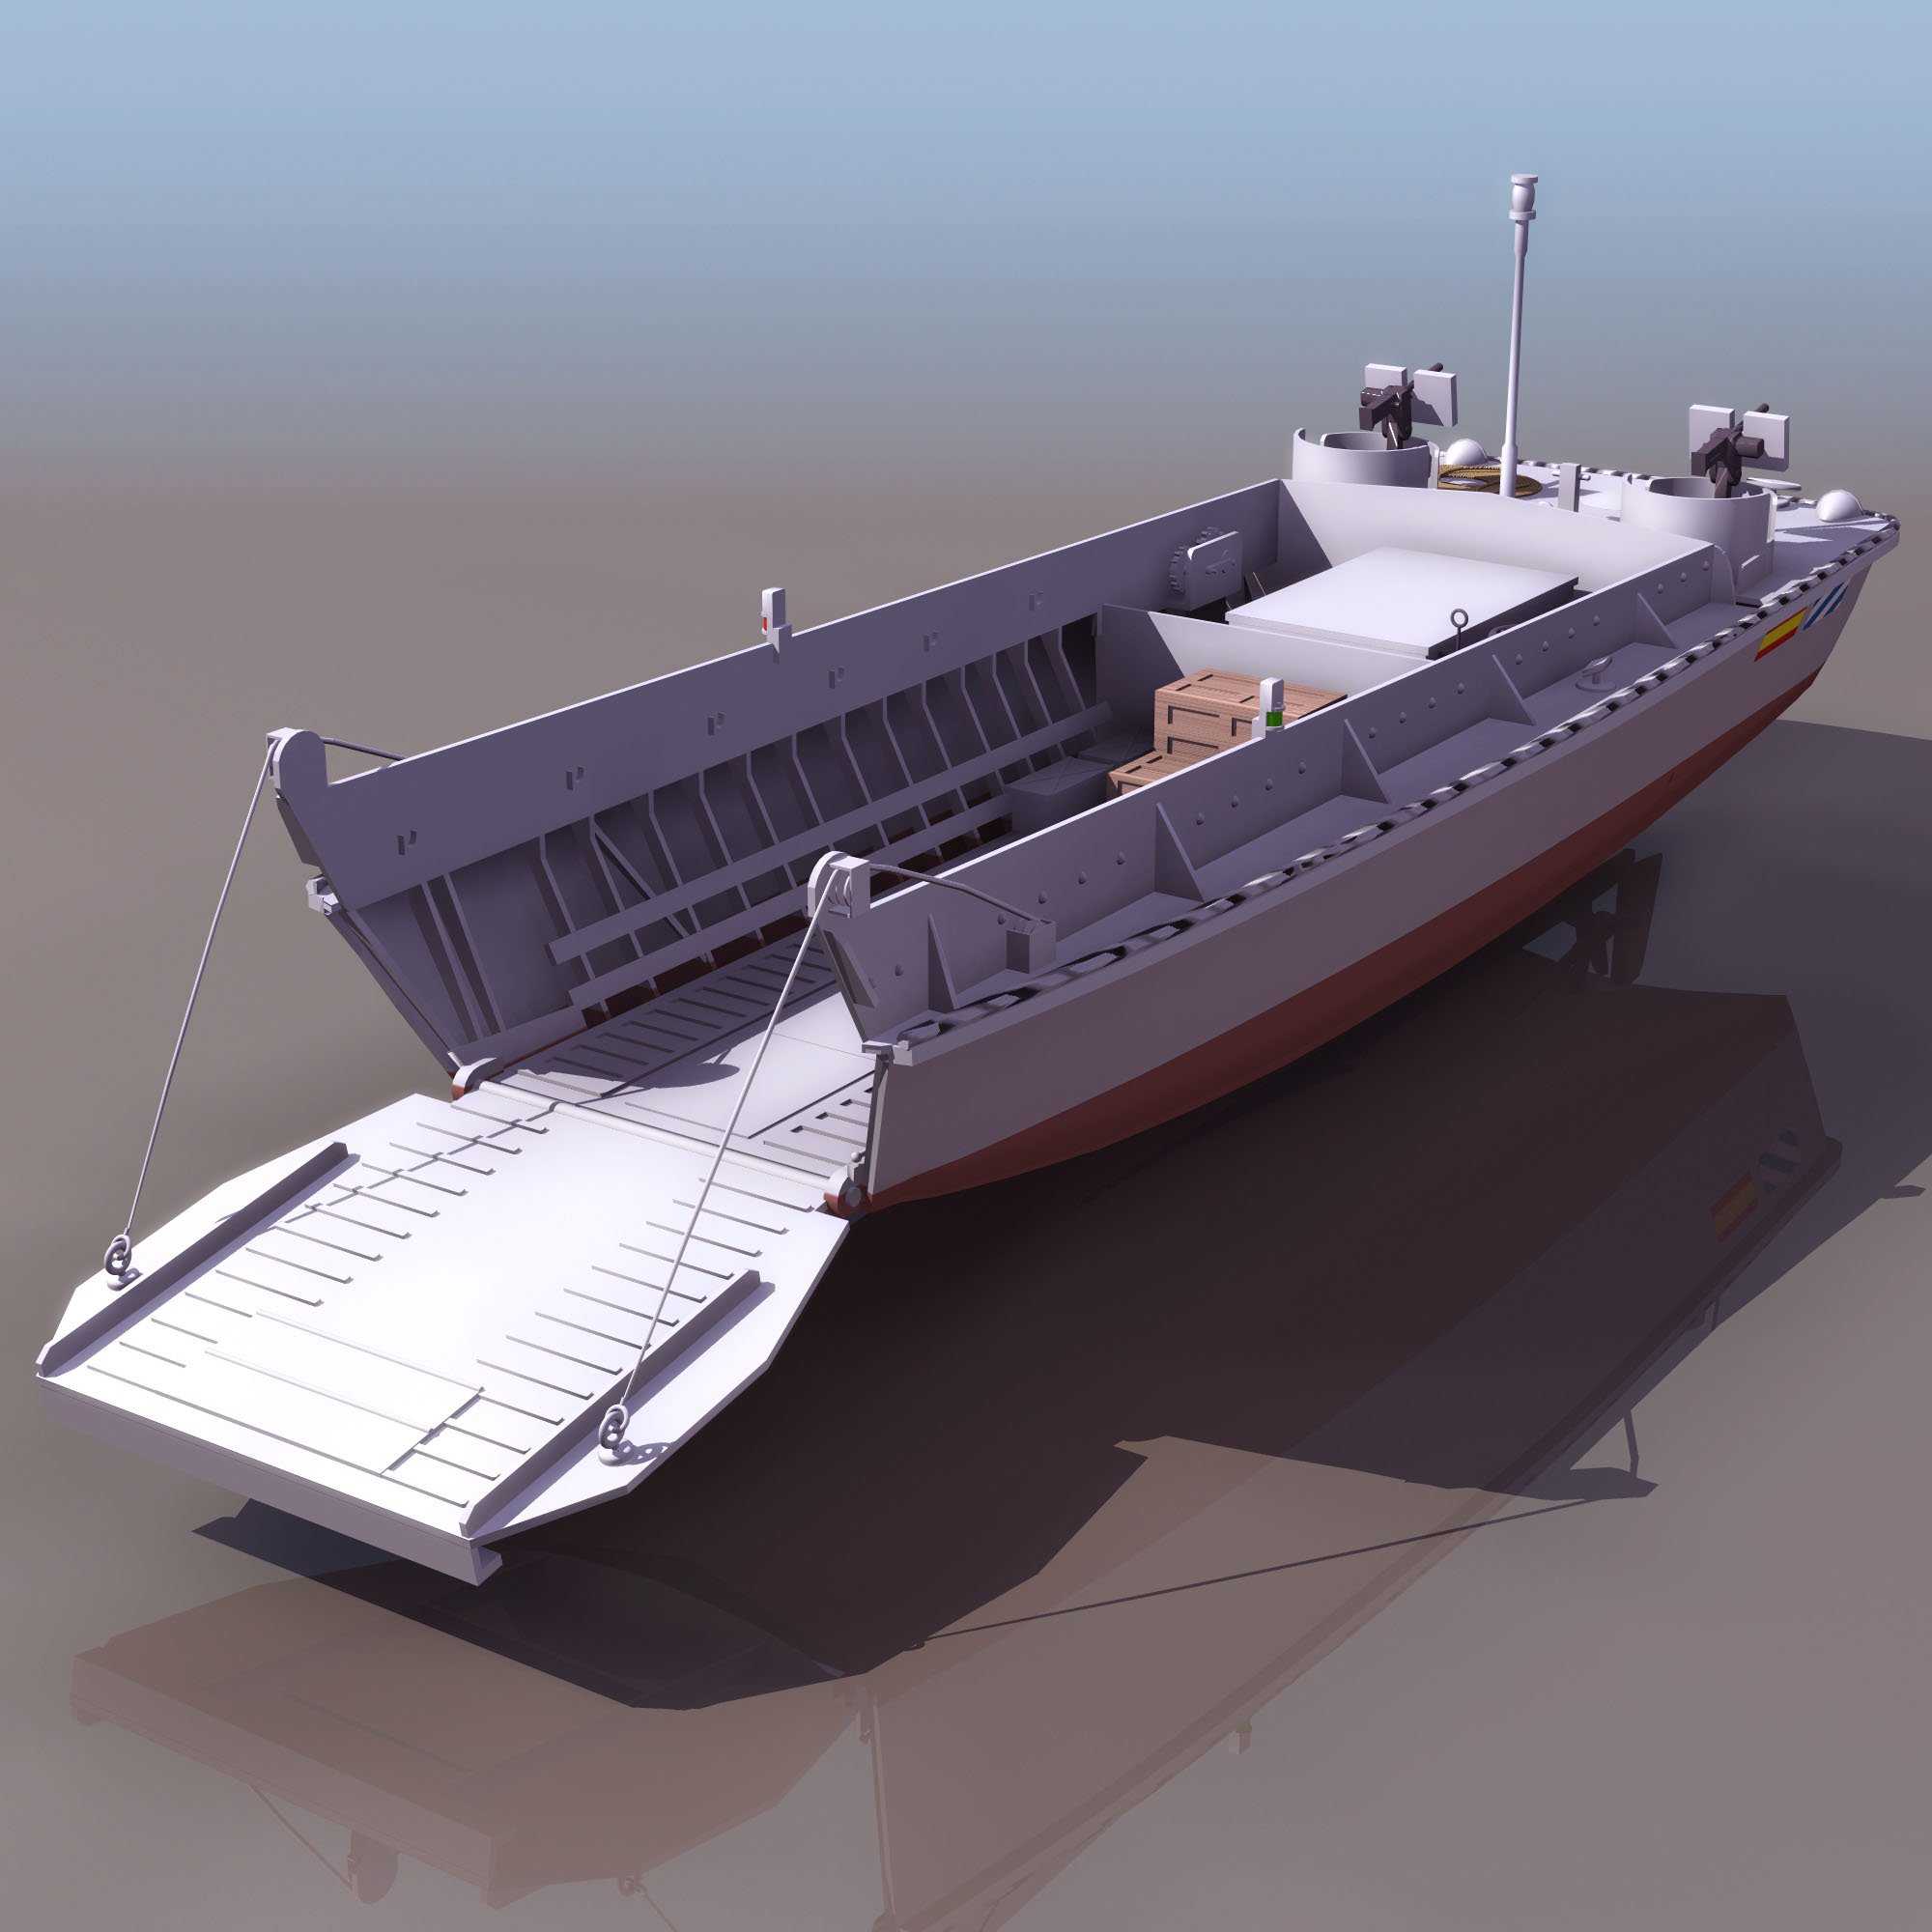 3d модели  Корабли, яхты  Транспорт Каталог 3d Моделей  Для 3d Max И Других